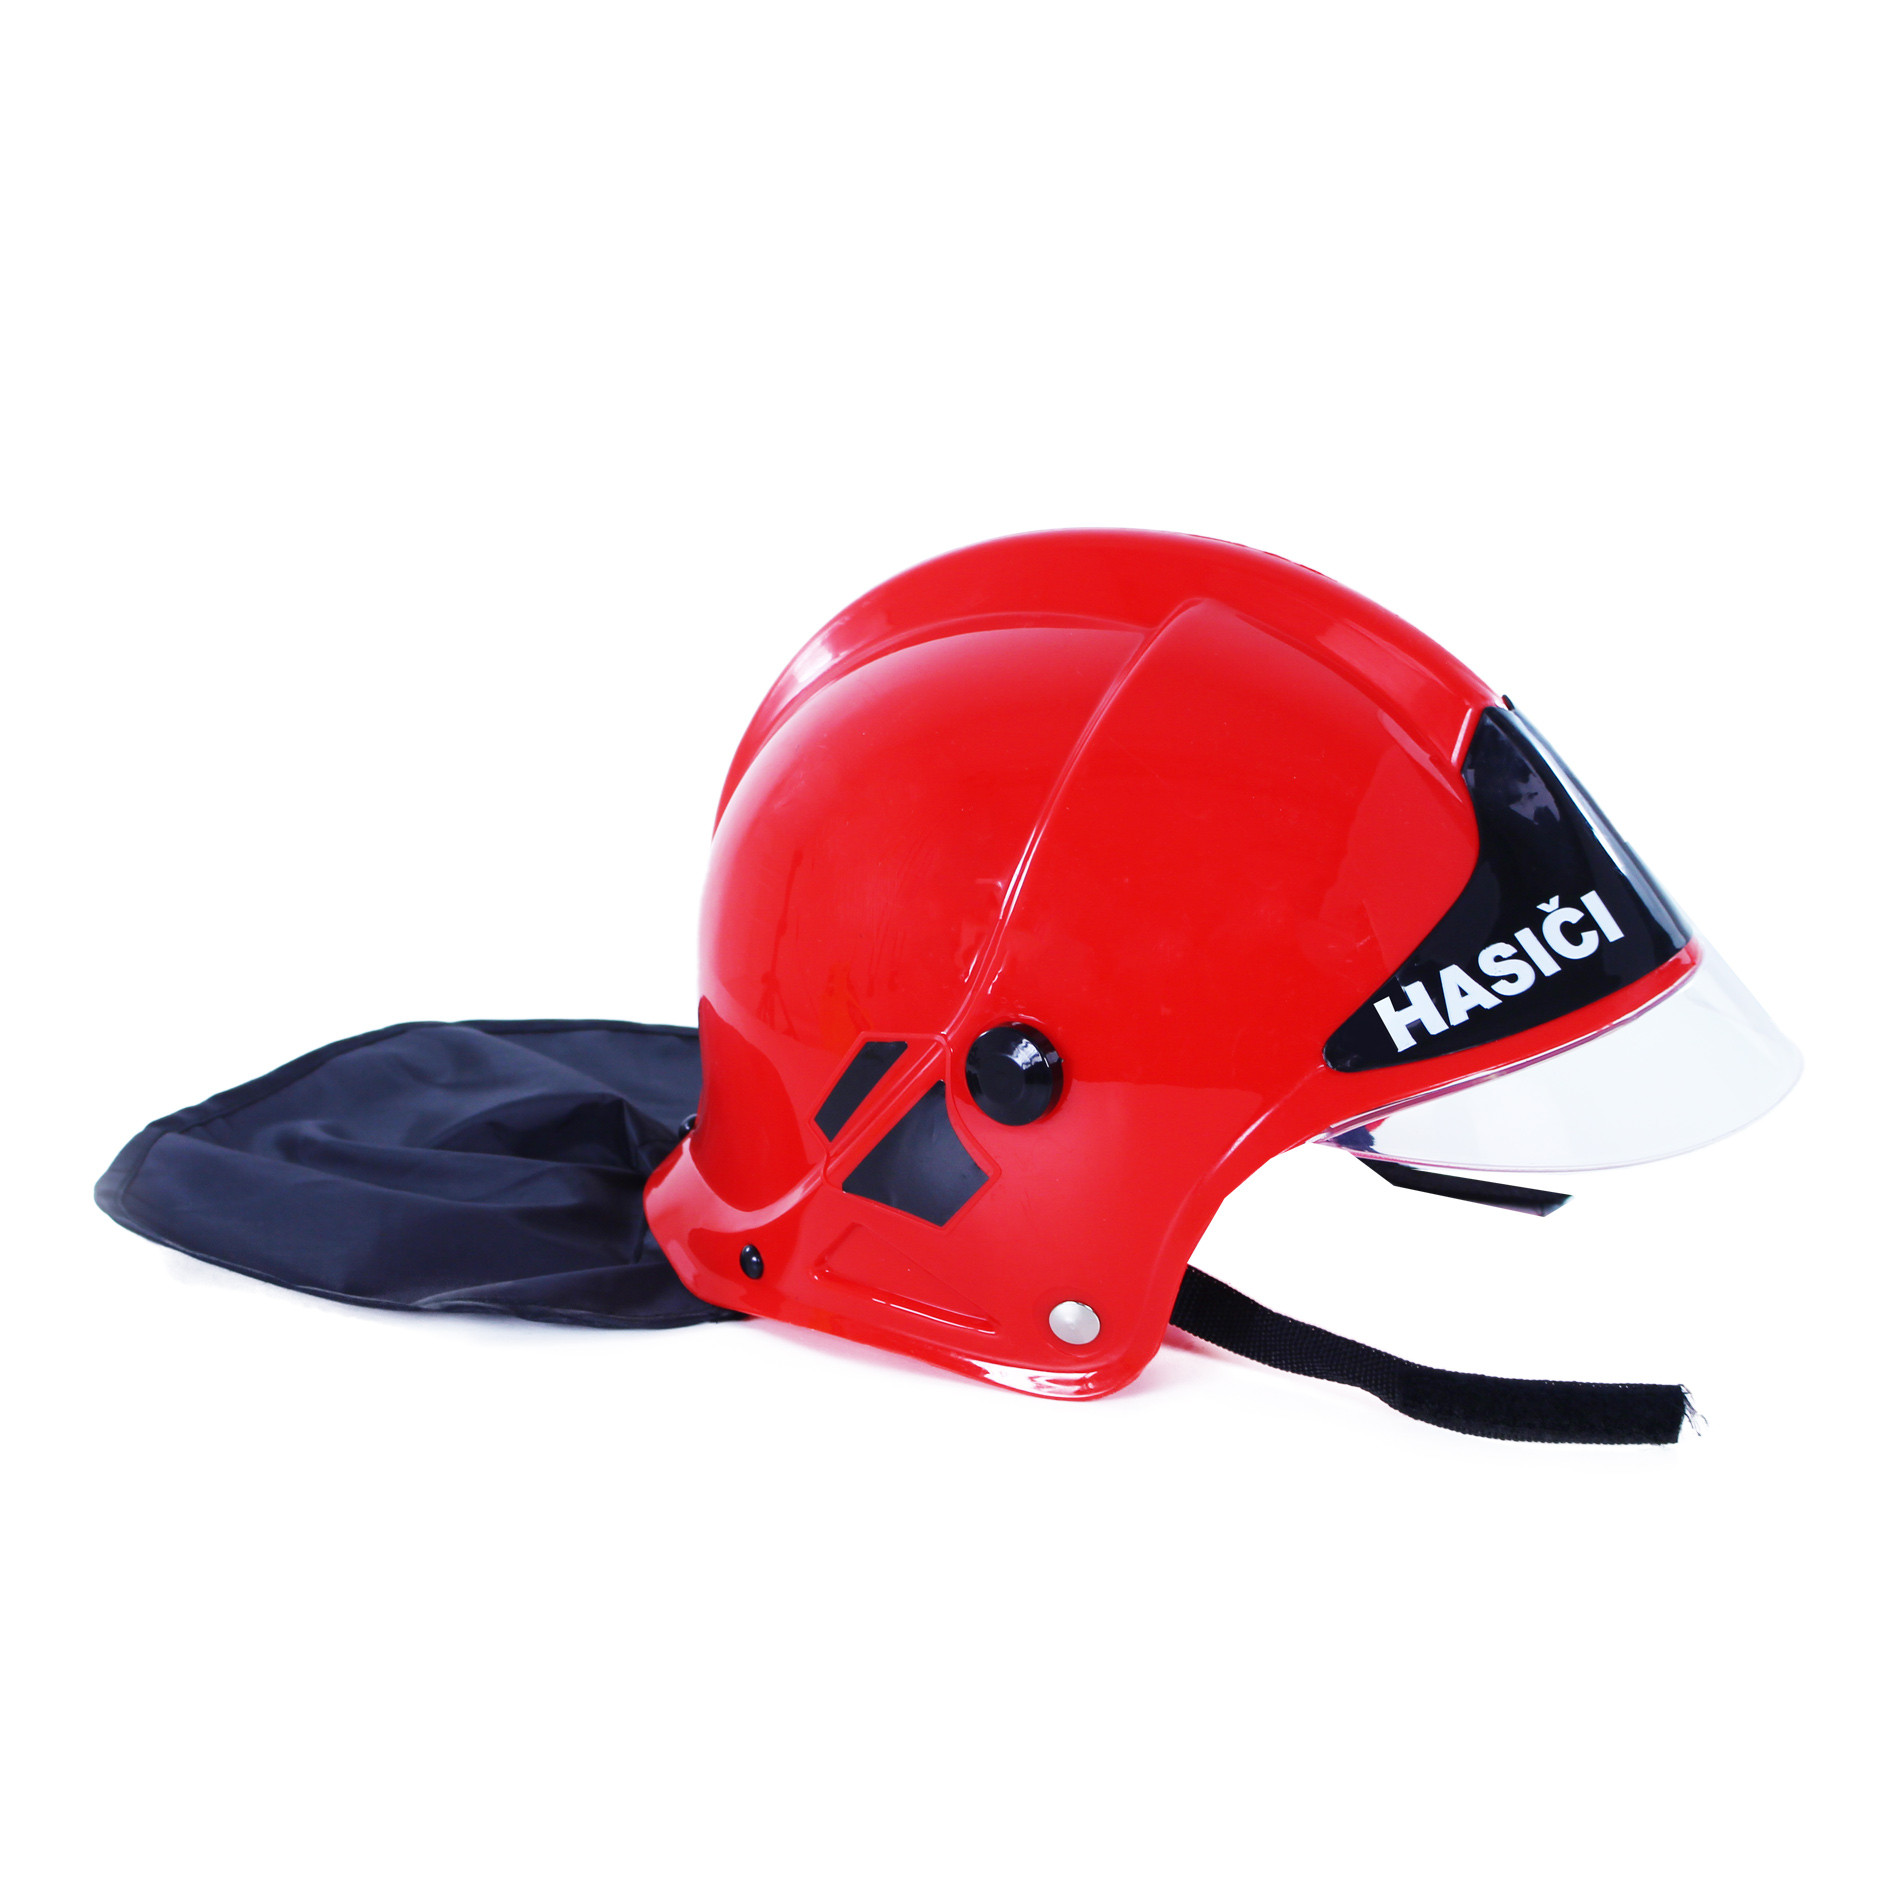 Dětská červená helma/přilba hasič CZ text